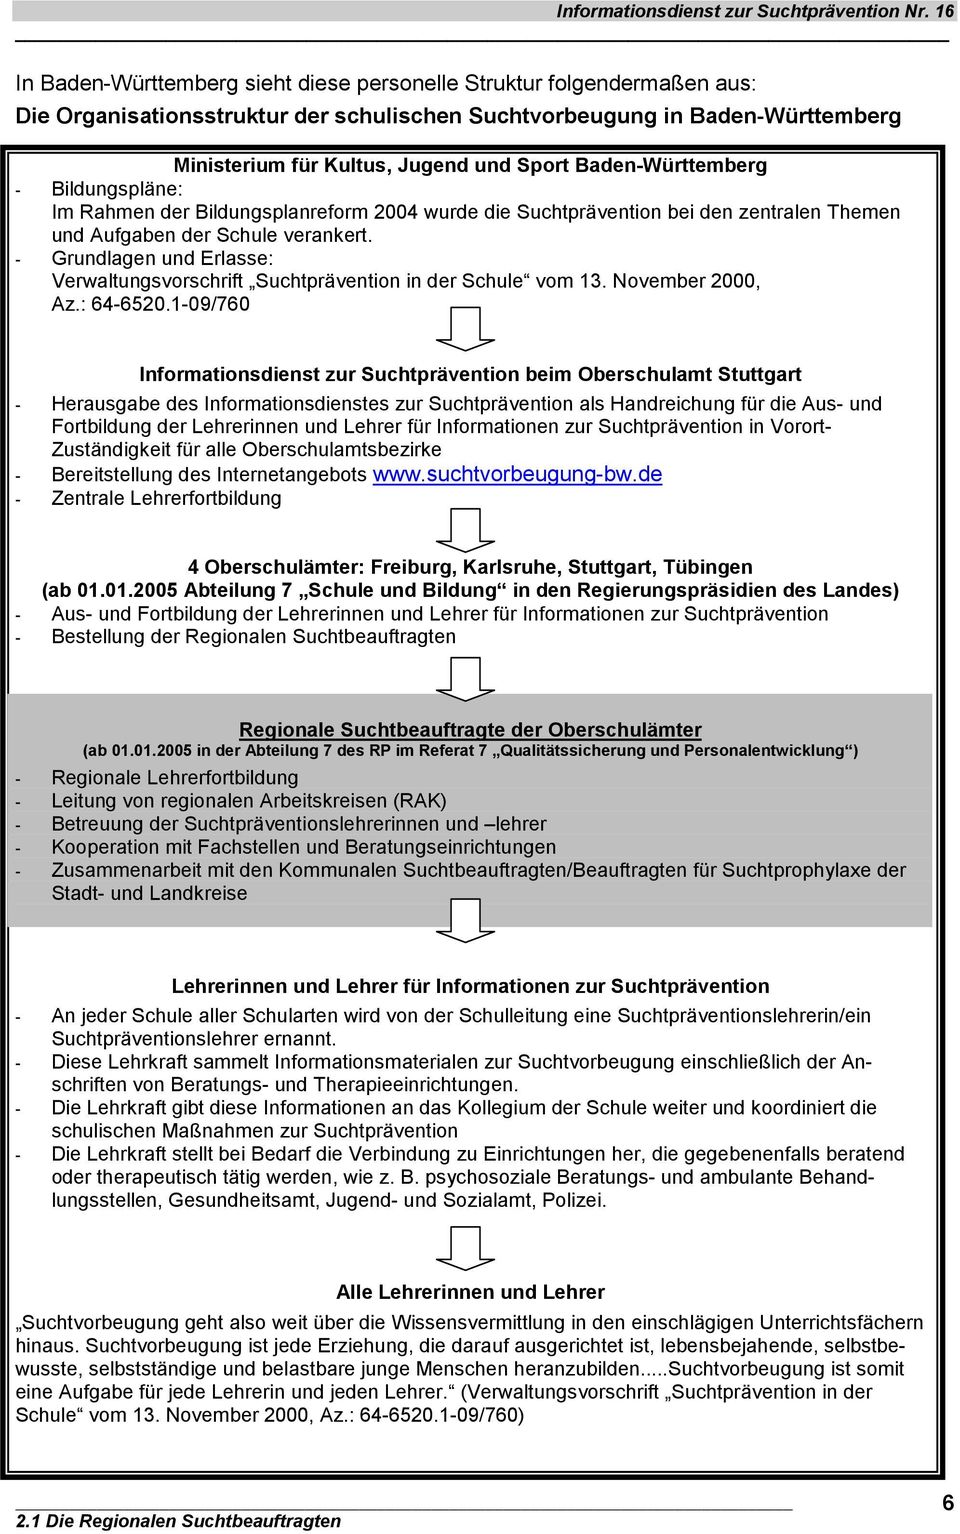 - Grundlagen und Erlasse: Verwaltungsvorschrift Suchtprävention in der Schule vom 13. November 2000, Az.: 64-6520.